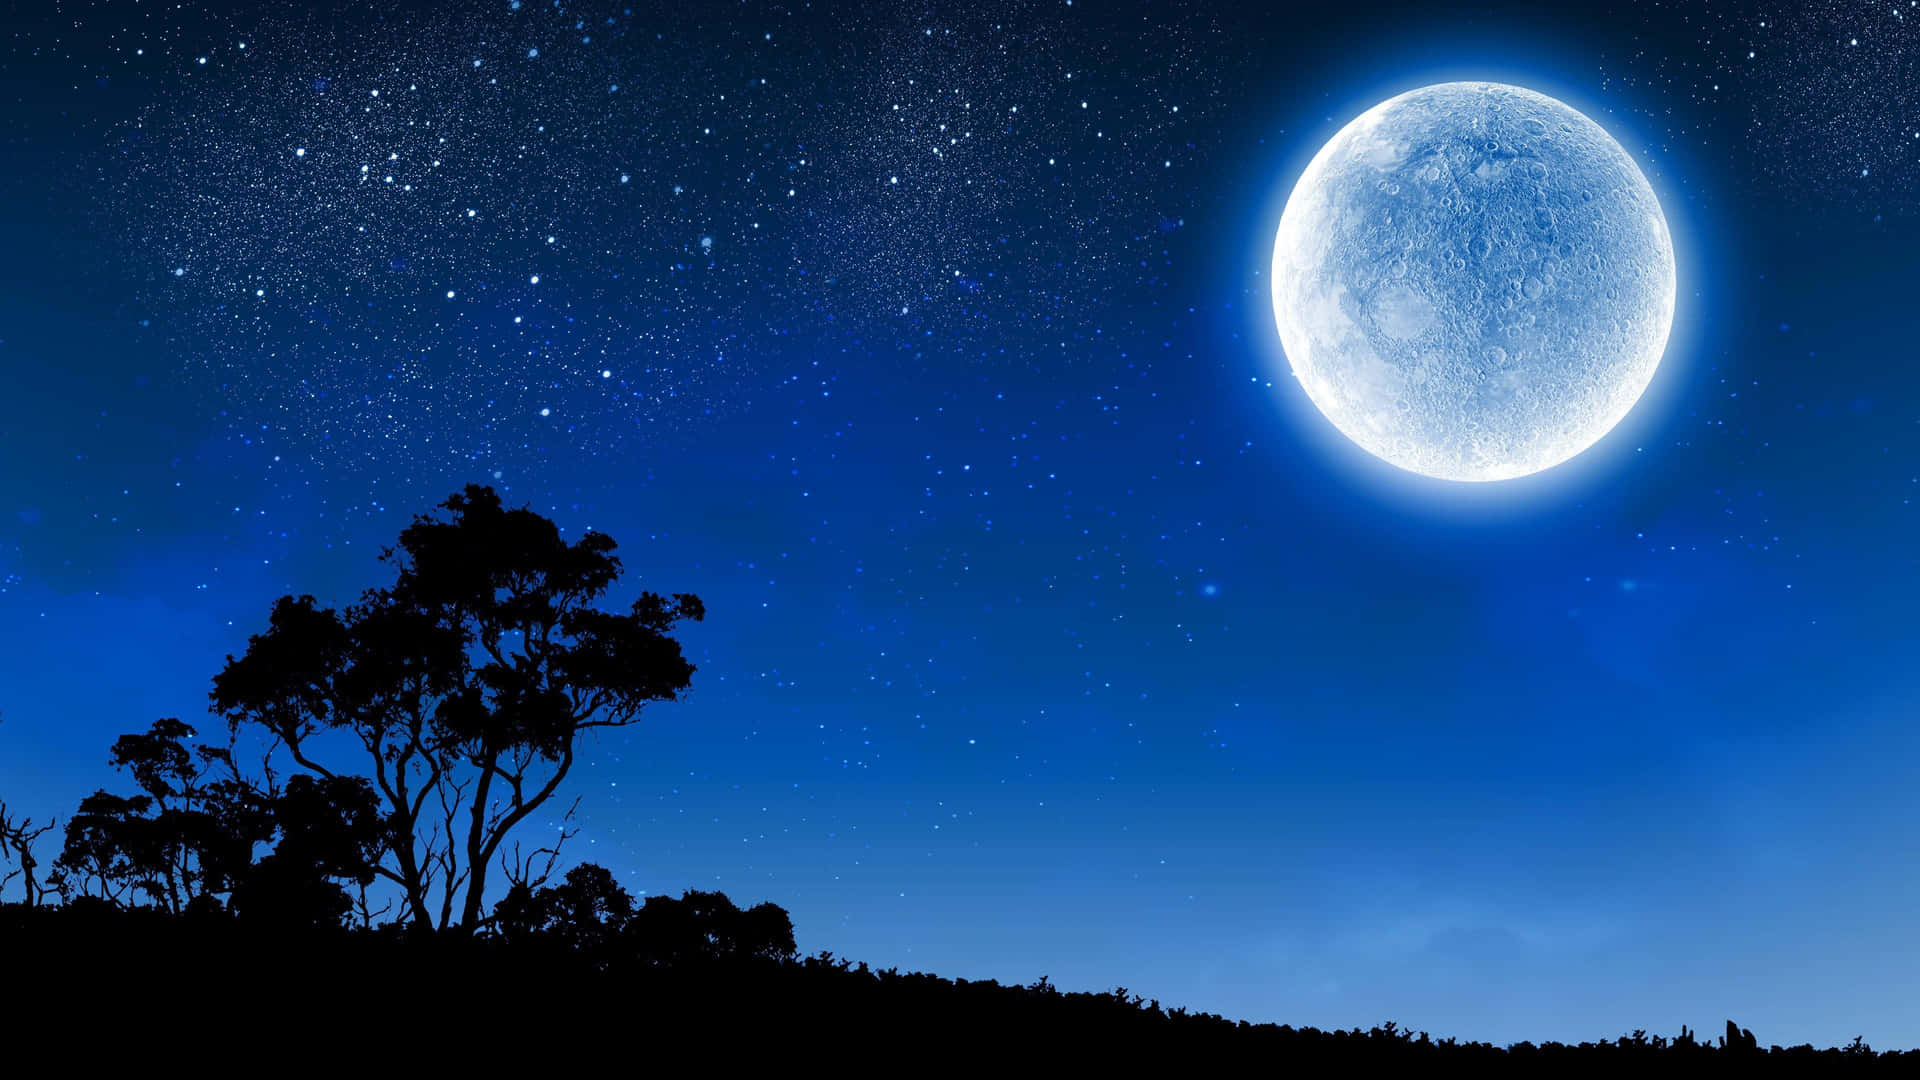 Cielonocturno Estrellado Azul Con Luna. Fondo de pantalla